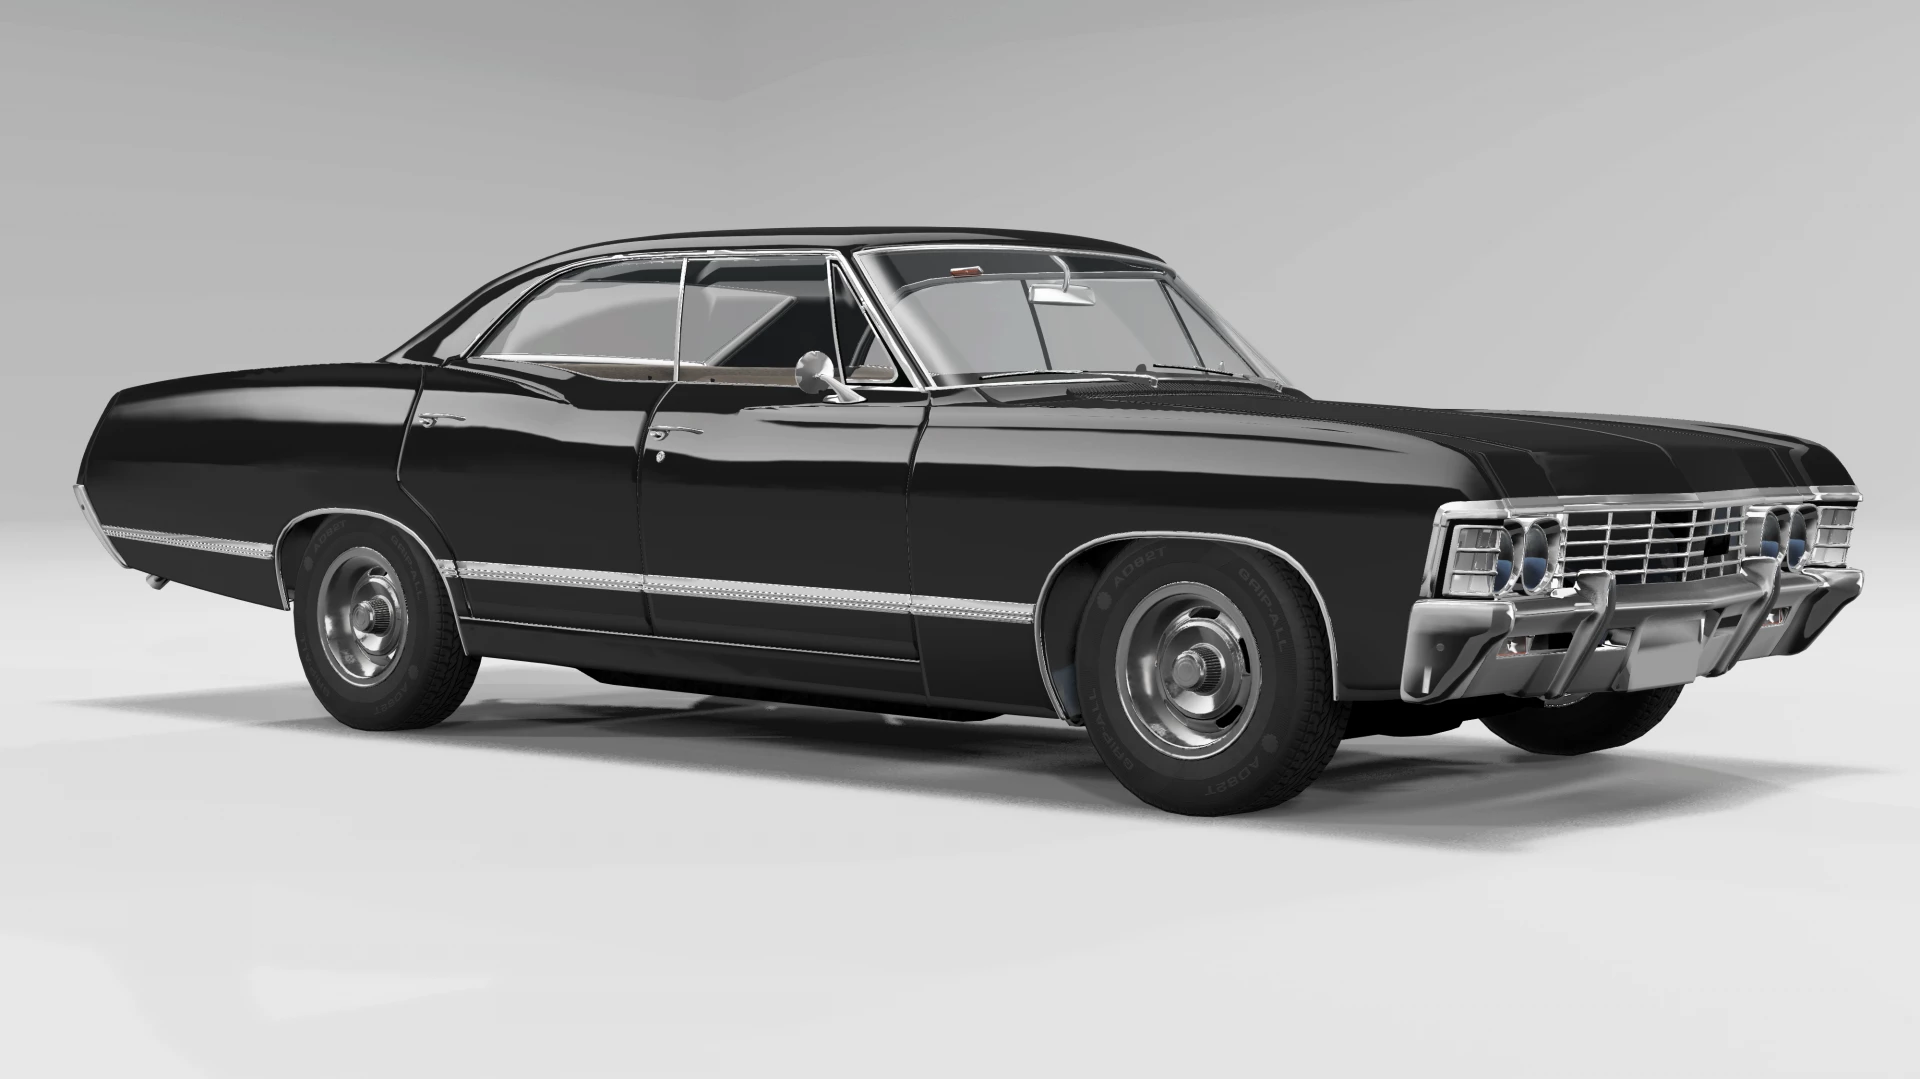 Chevrolet Impala 1967 Supernatural 1.1 - BeamNG.drive